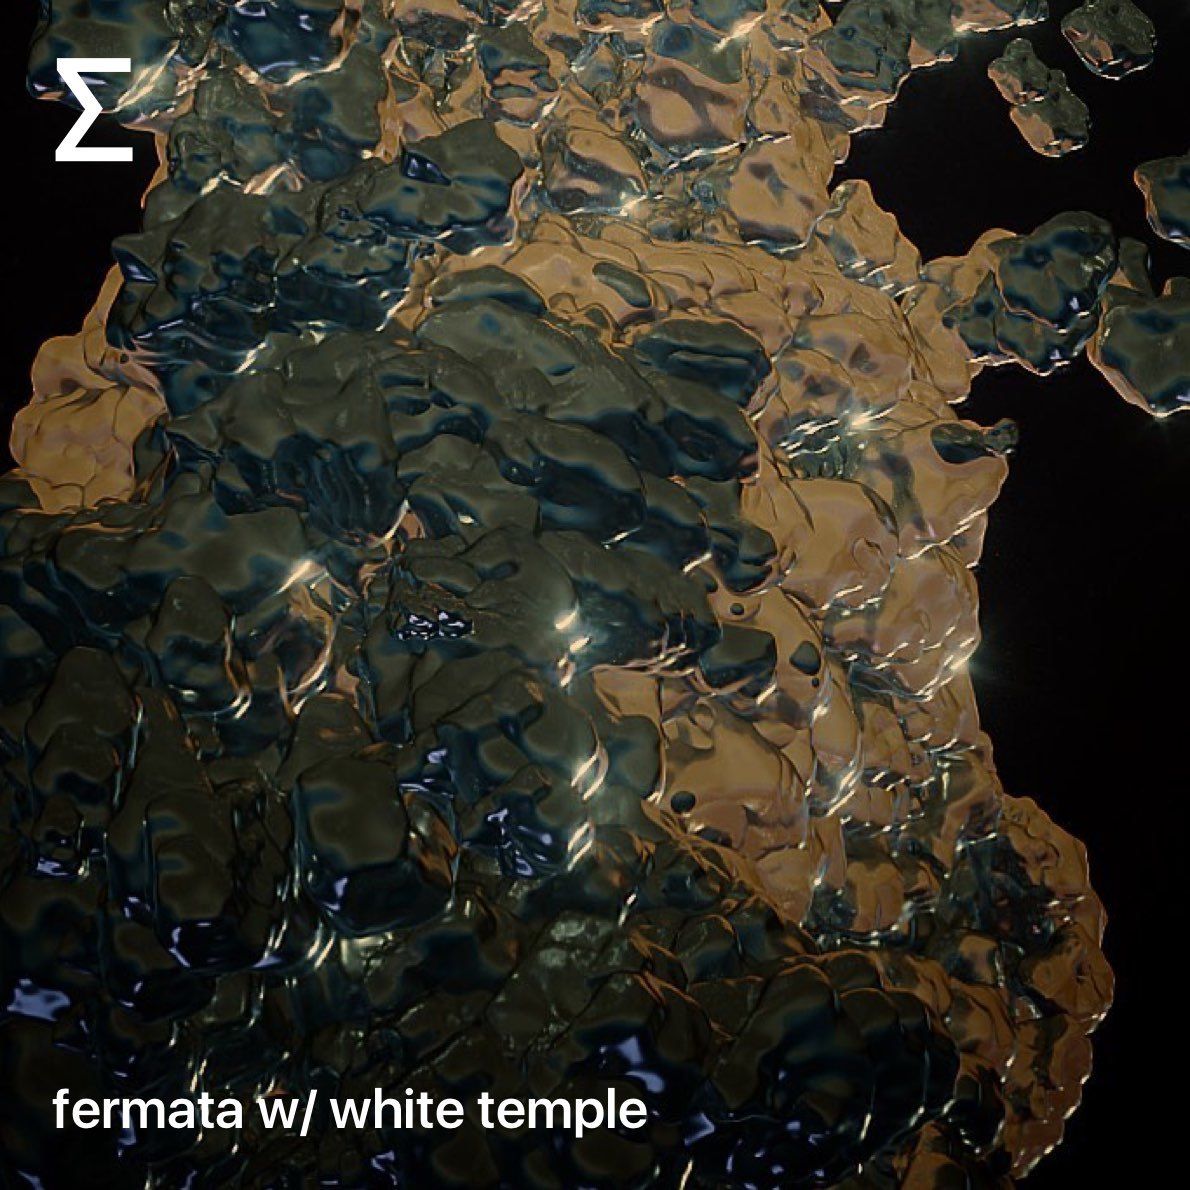 fermata w/ white temple